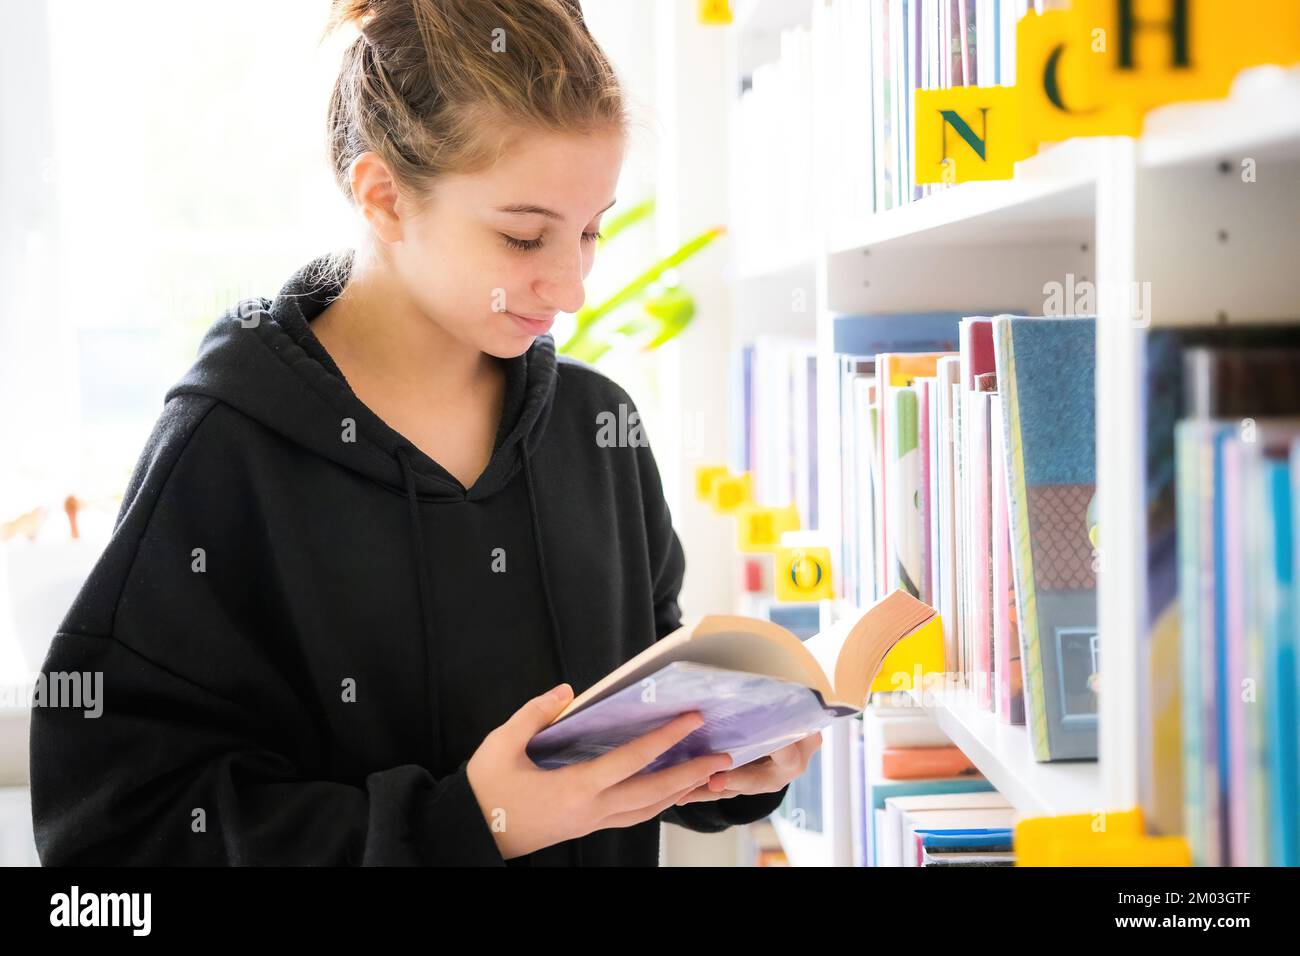 ragazza adolescente cerca il libro giusto nella biblioteca della scuola Foto Stock